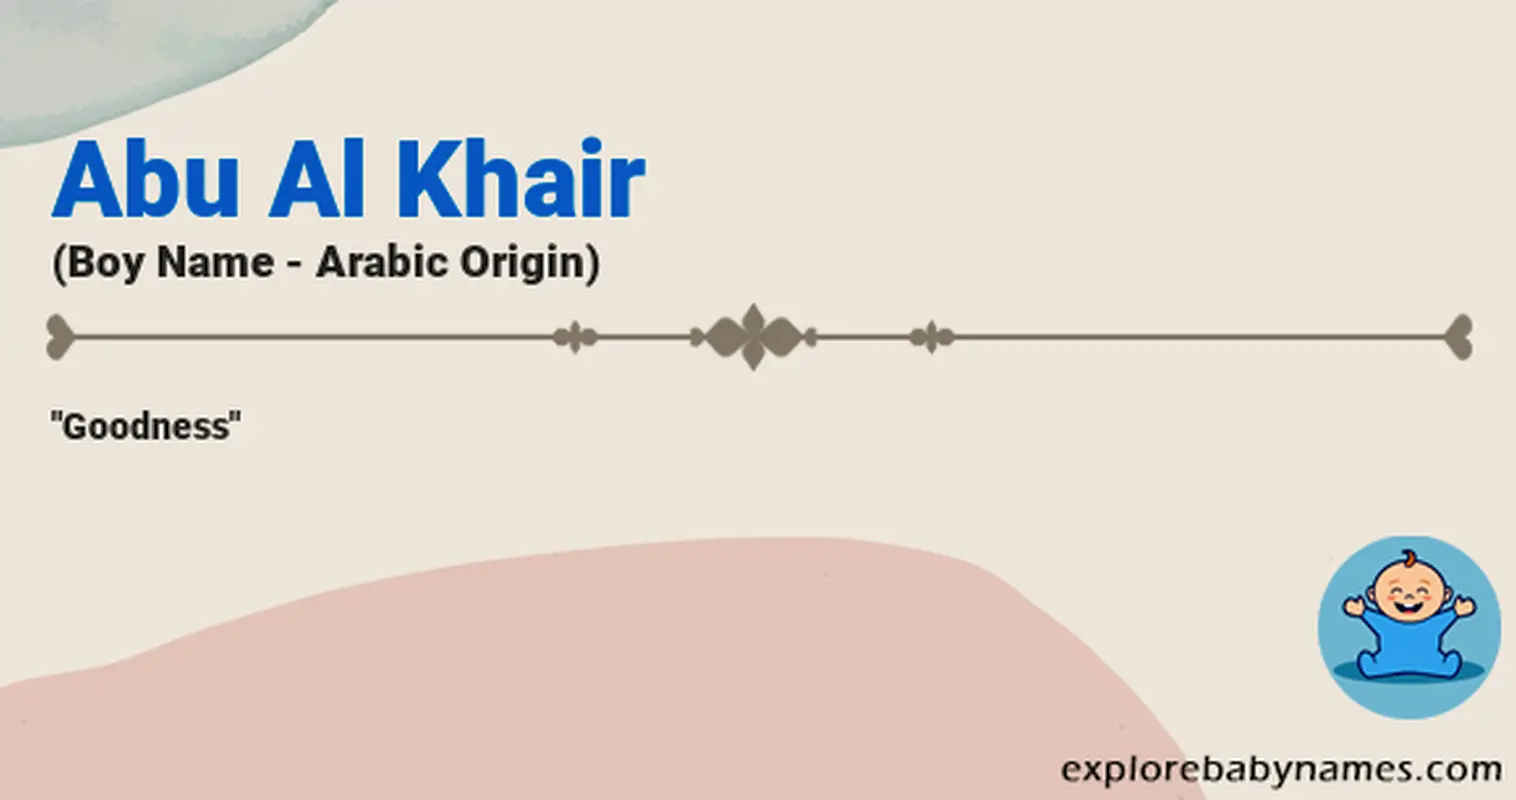 Meaning of Abu Al Khair